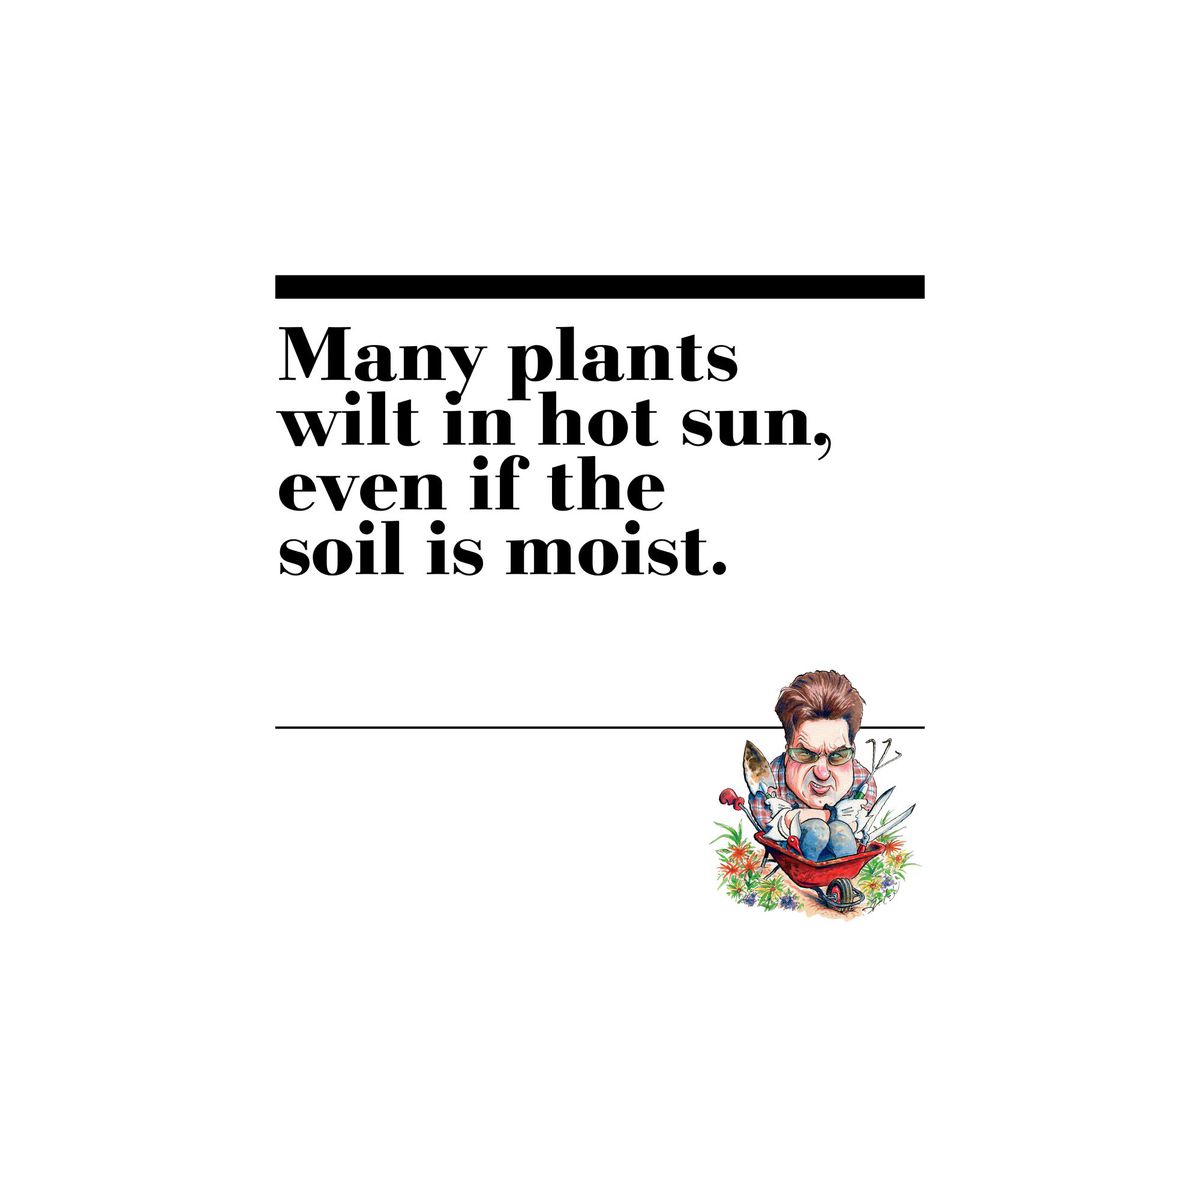 9. Many plants wilt in hot sun, even if the soil is moist.